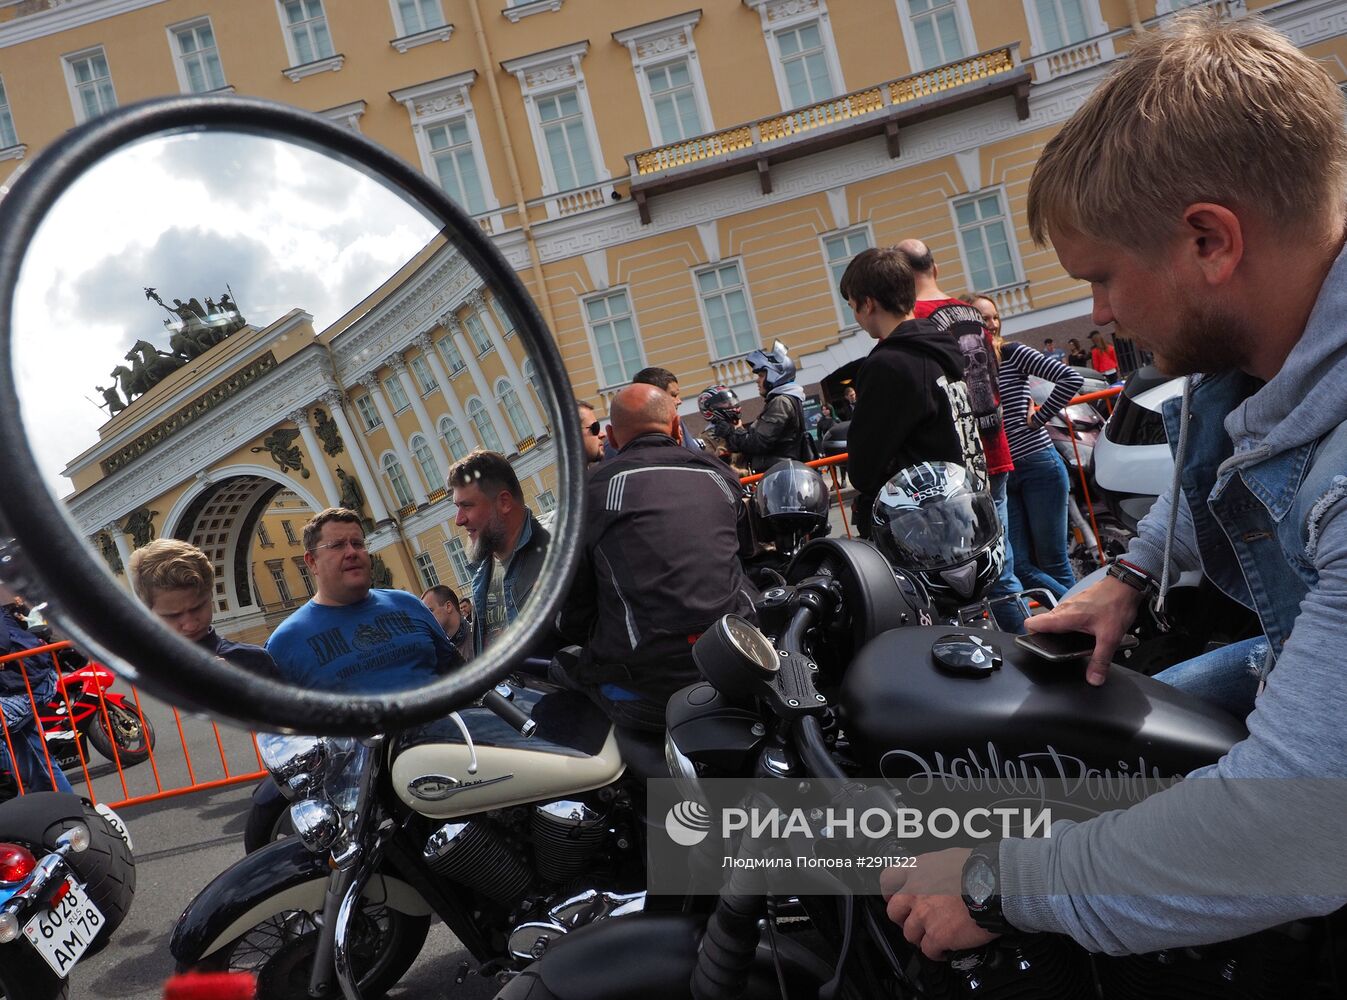 Мотофестиваль St.Petersburg Harley® Days в Санкт-Петербурге